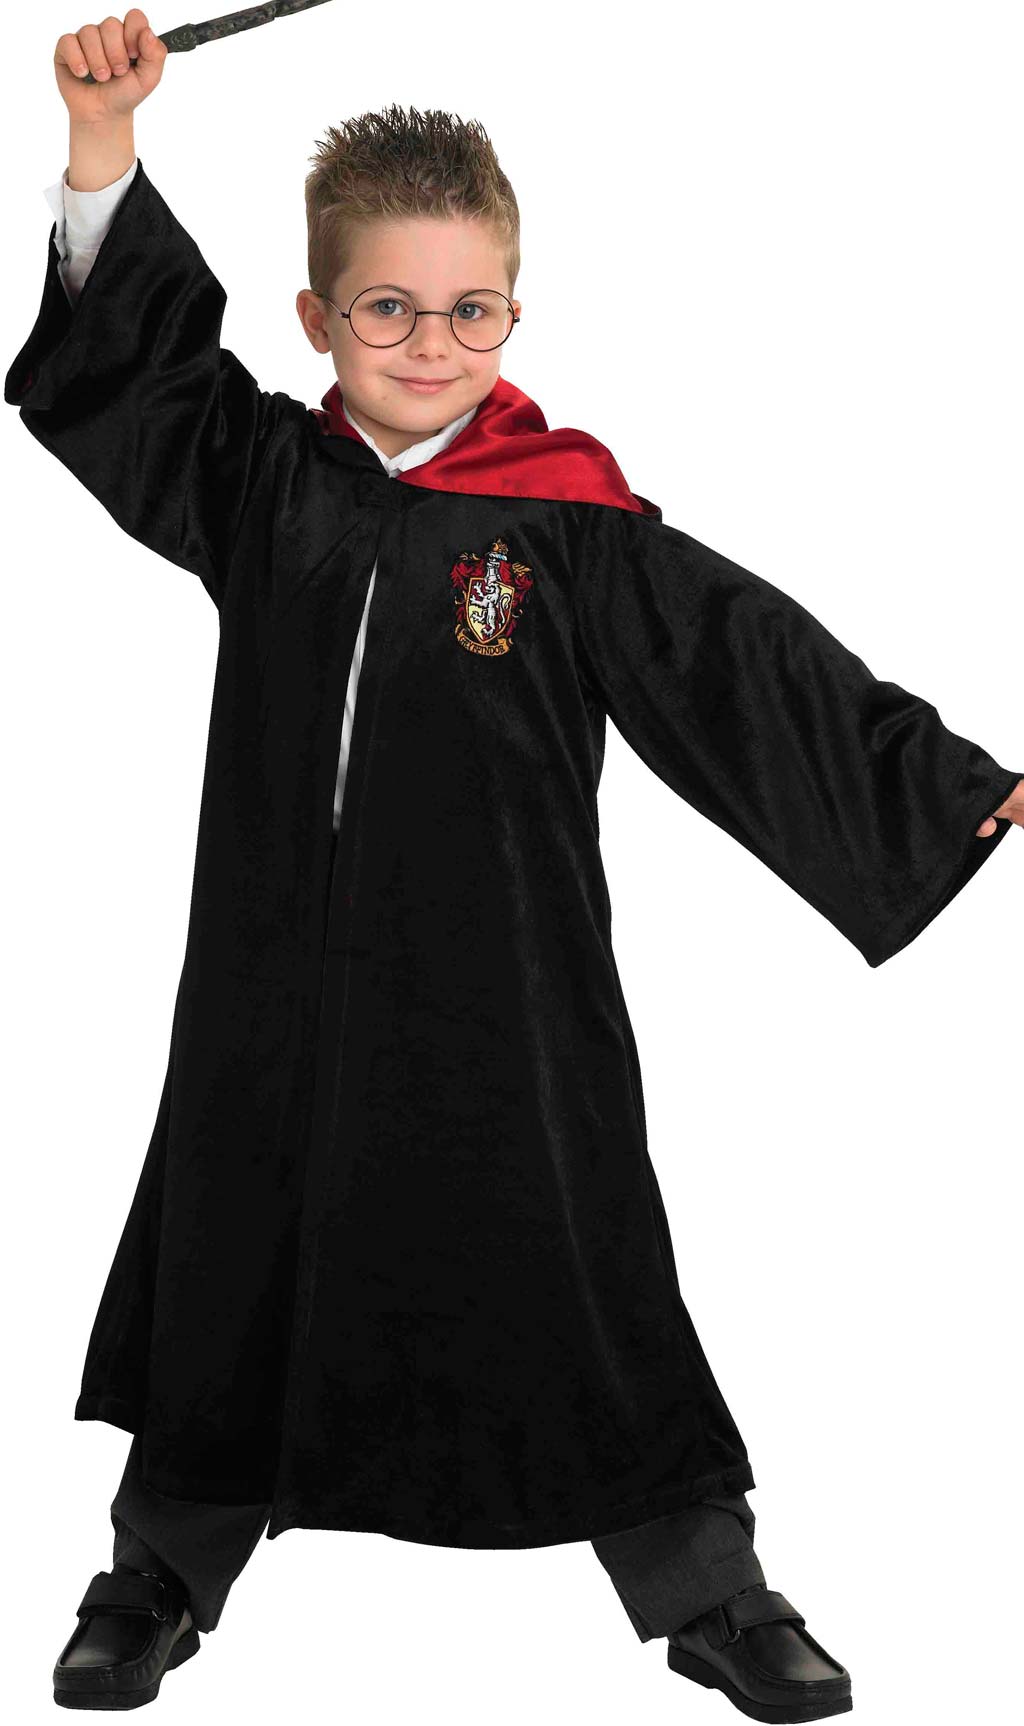 Costume da Harry Potter™ Deluxe per bambino